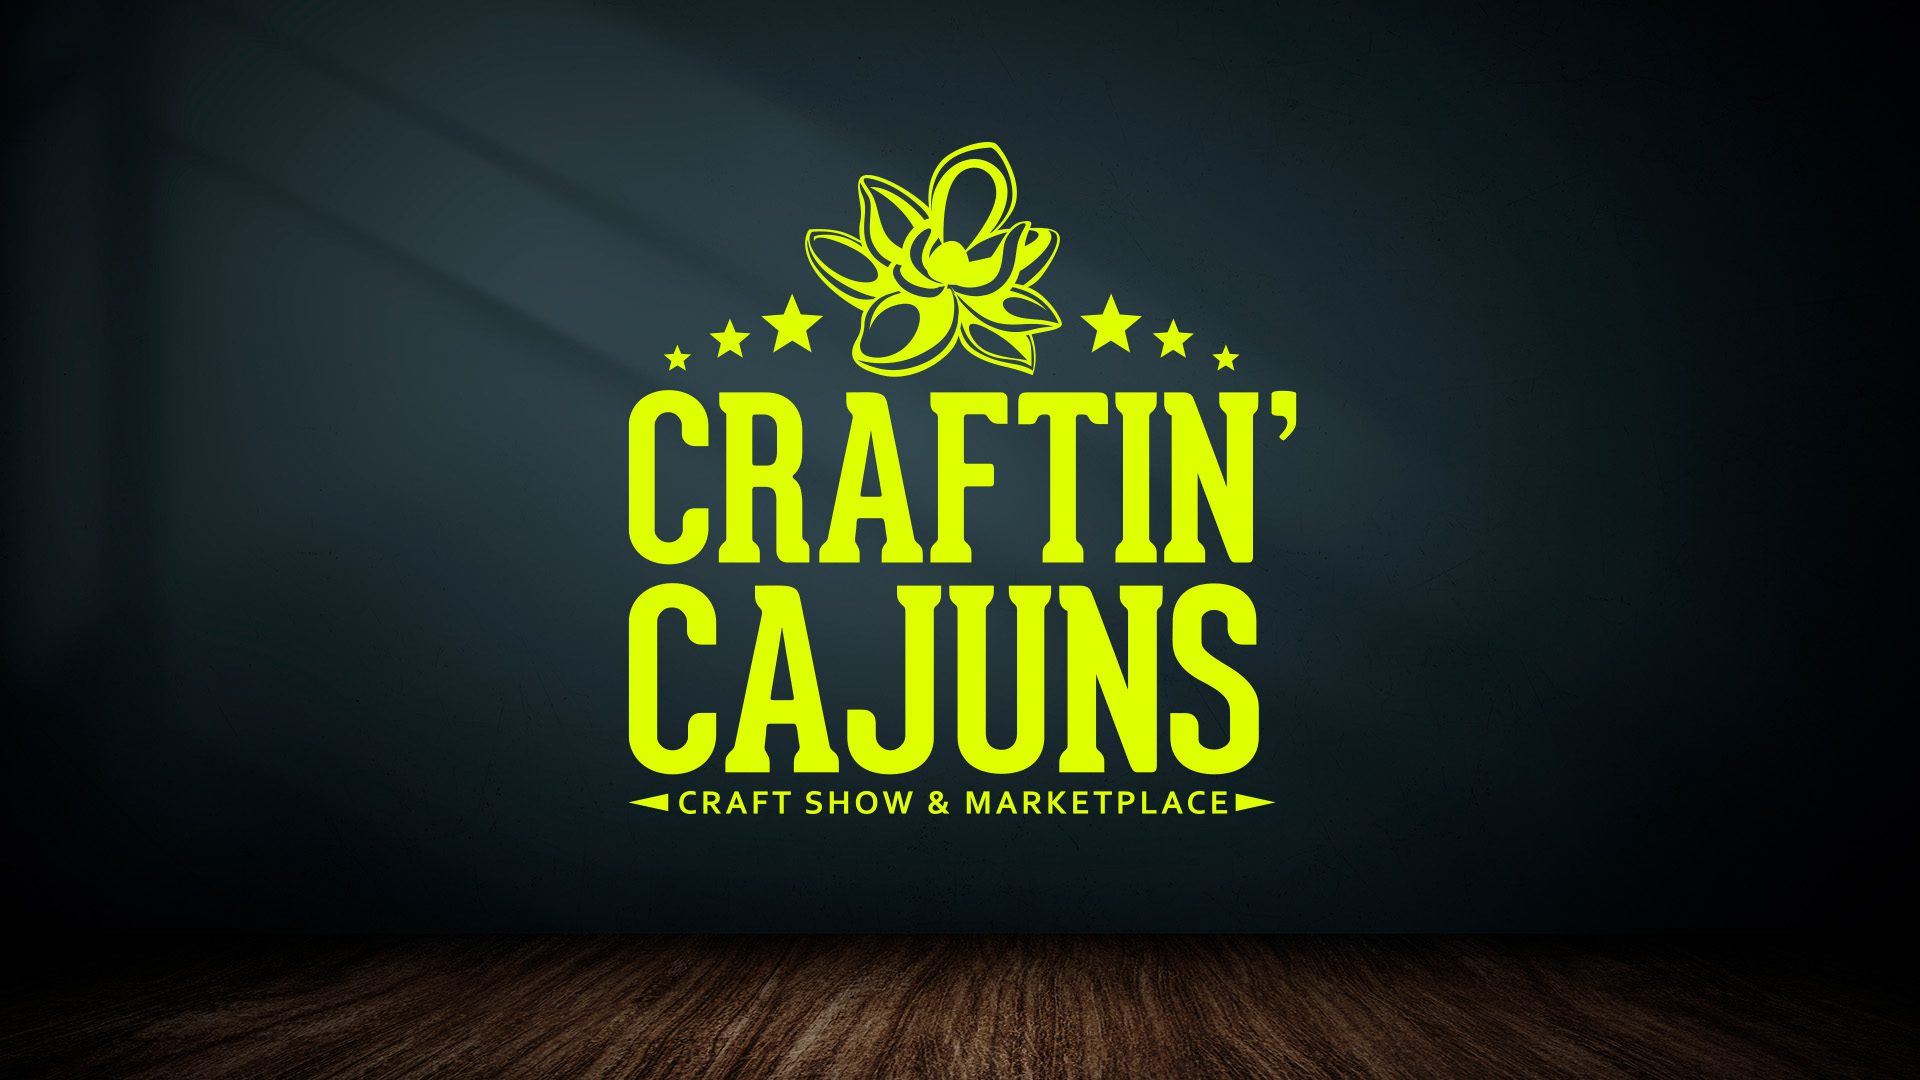 Craftin' Cajuns Craft Show and Marketplace